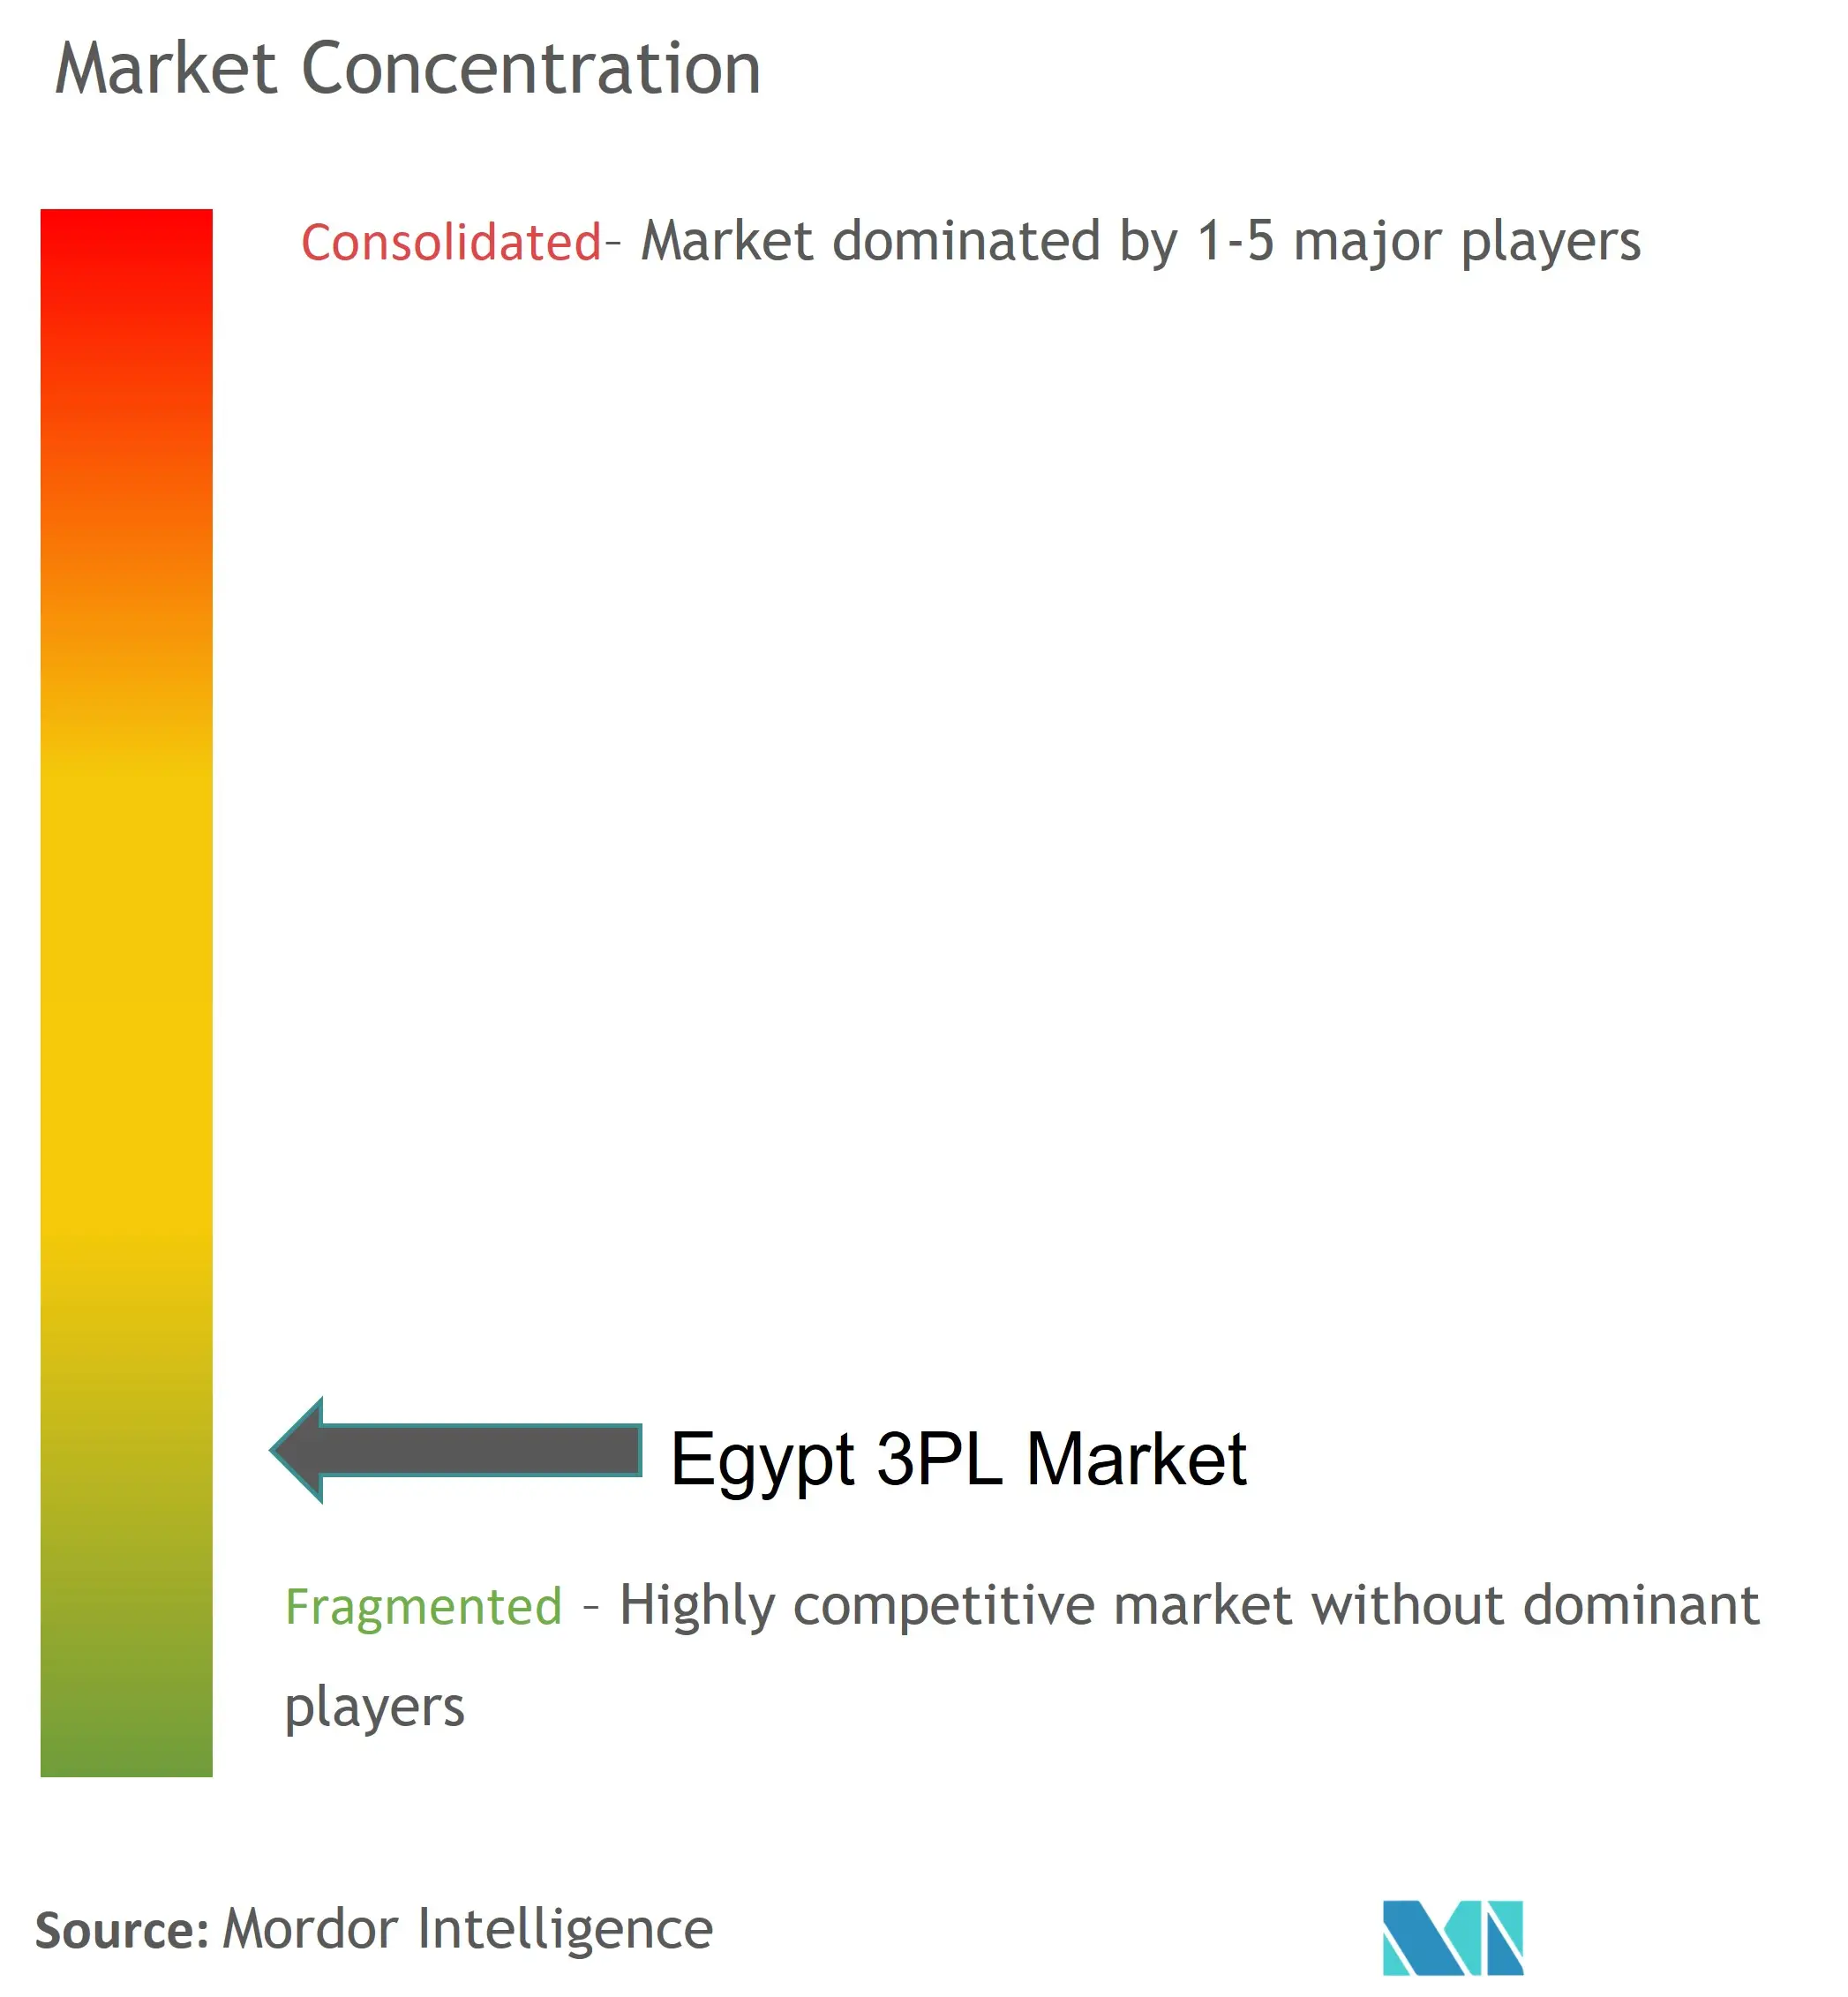 Ägypten 3PLMarktkonzentration